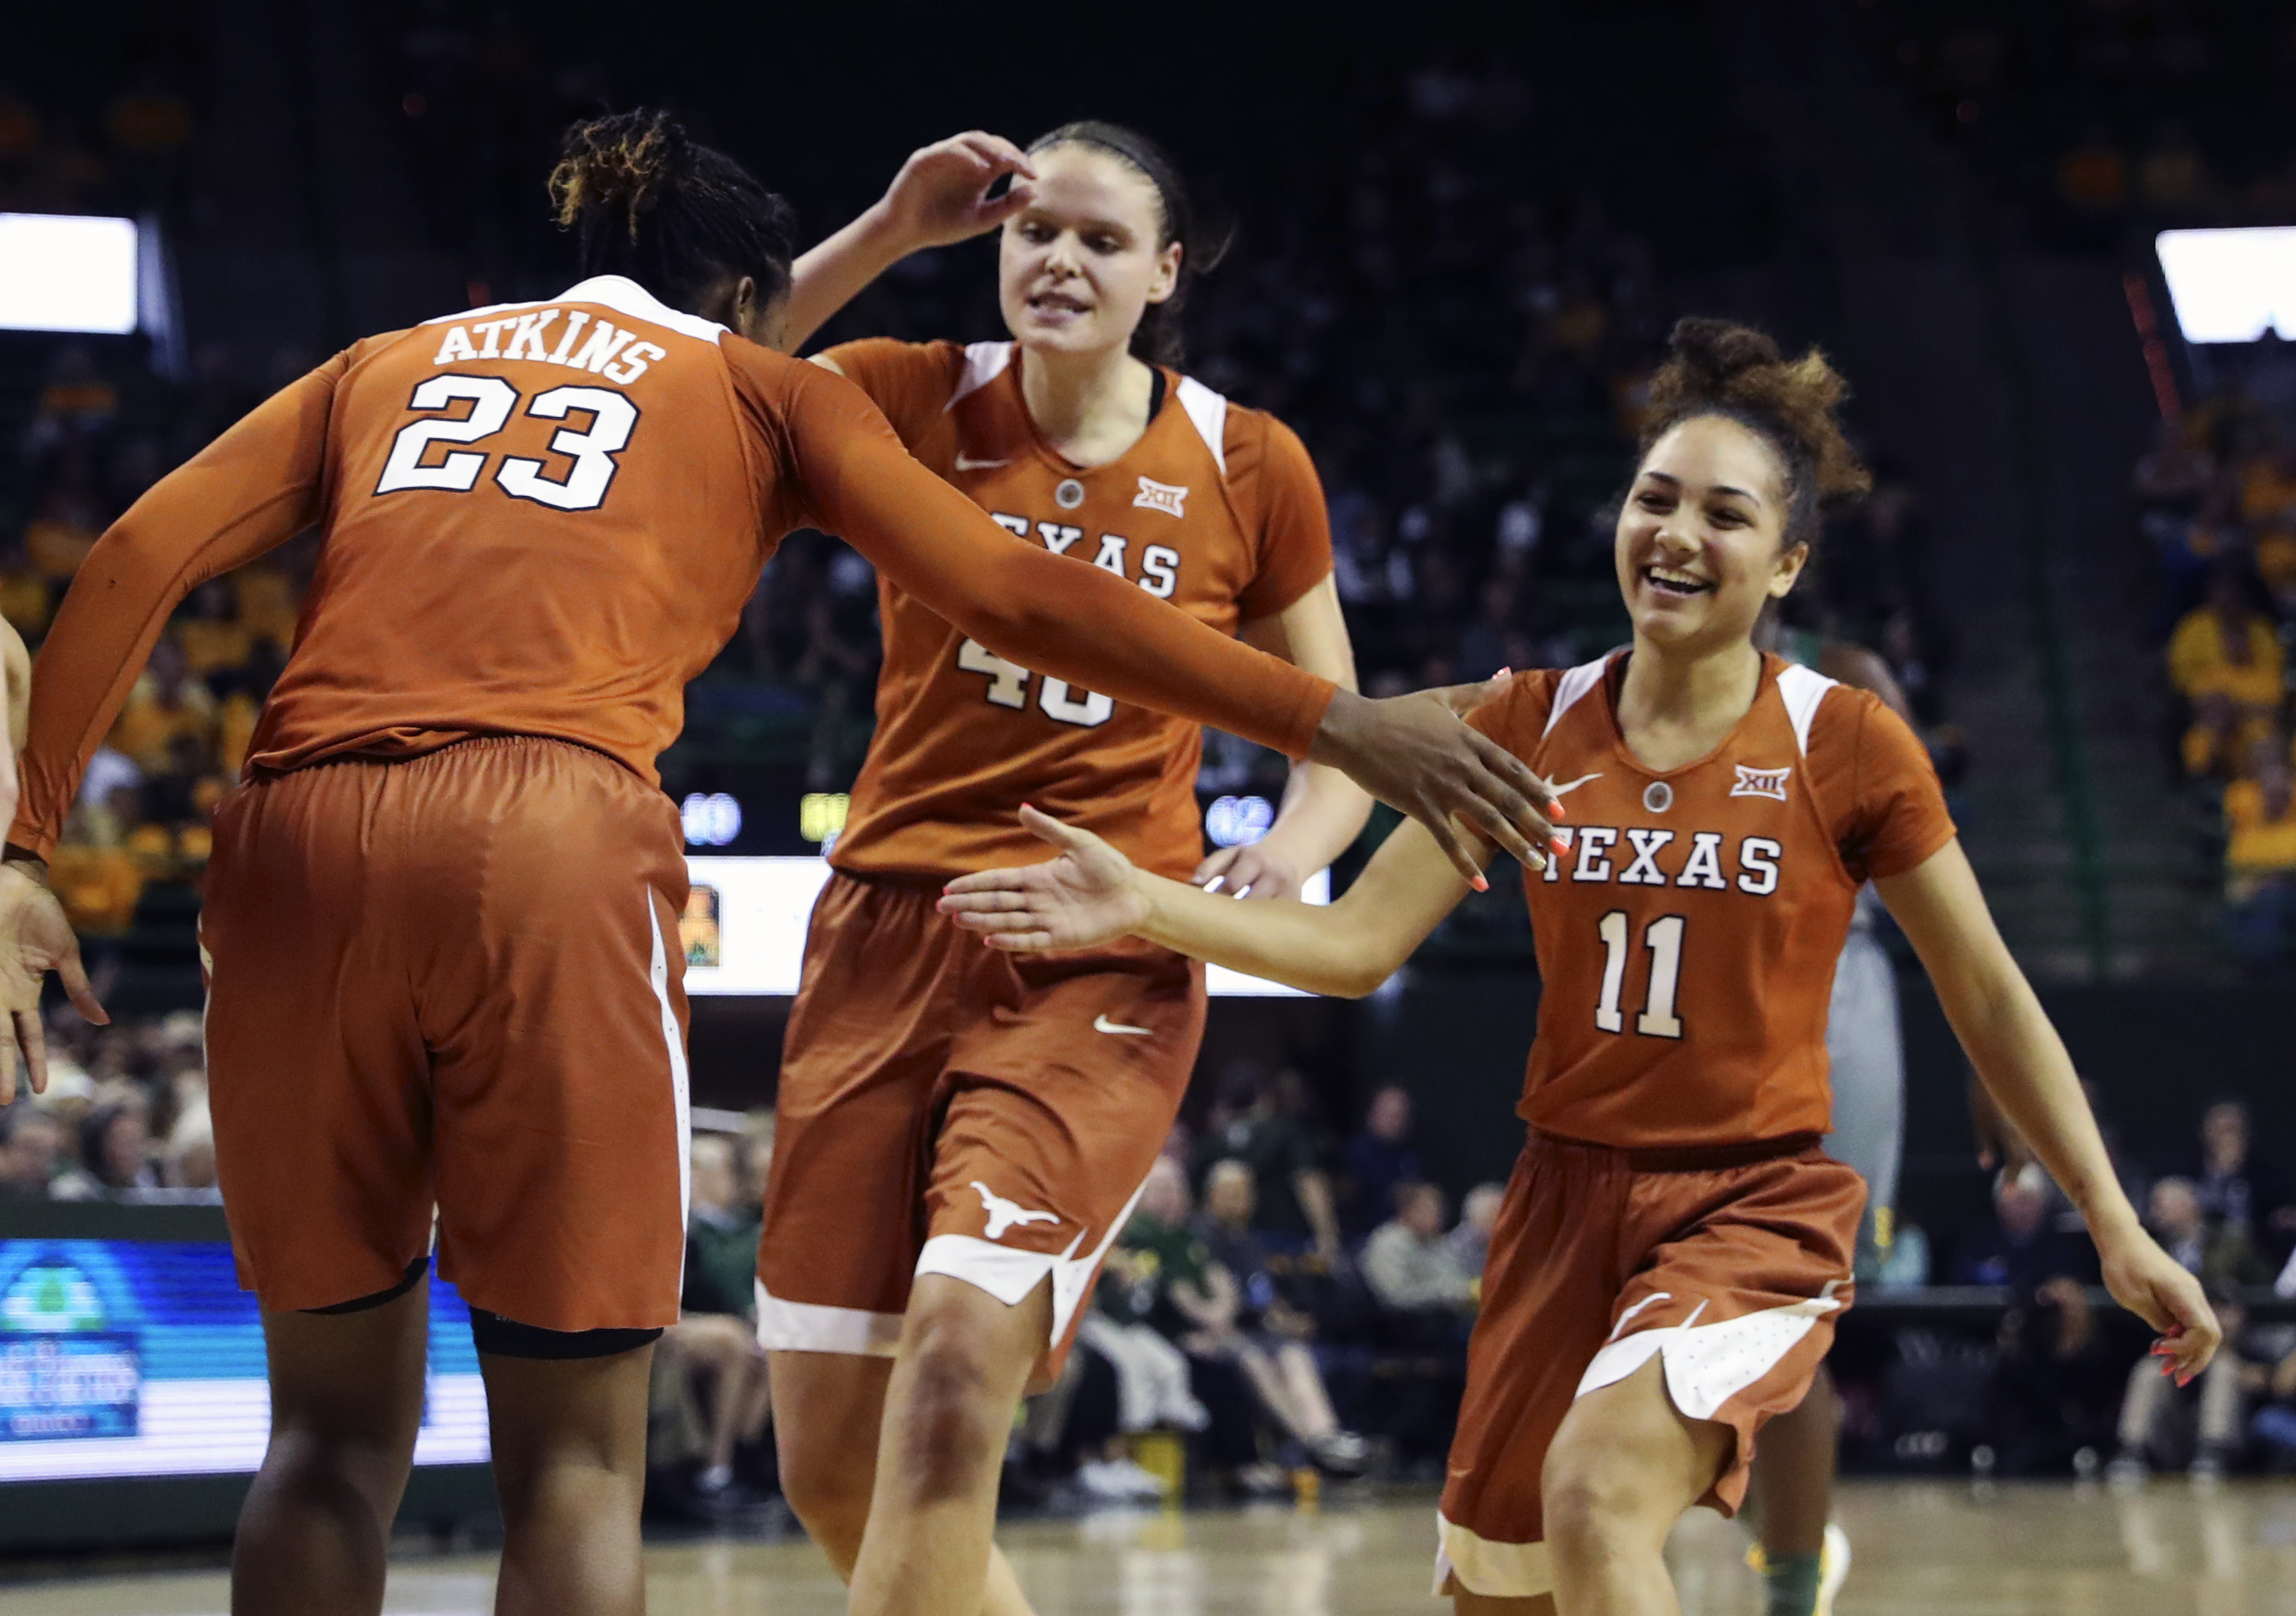 Texas Longhorns Women's Team Gets Top NCAA Honor Over UConn